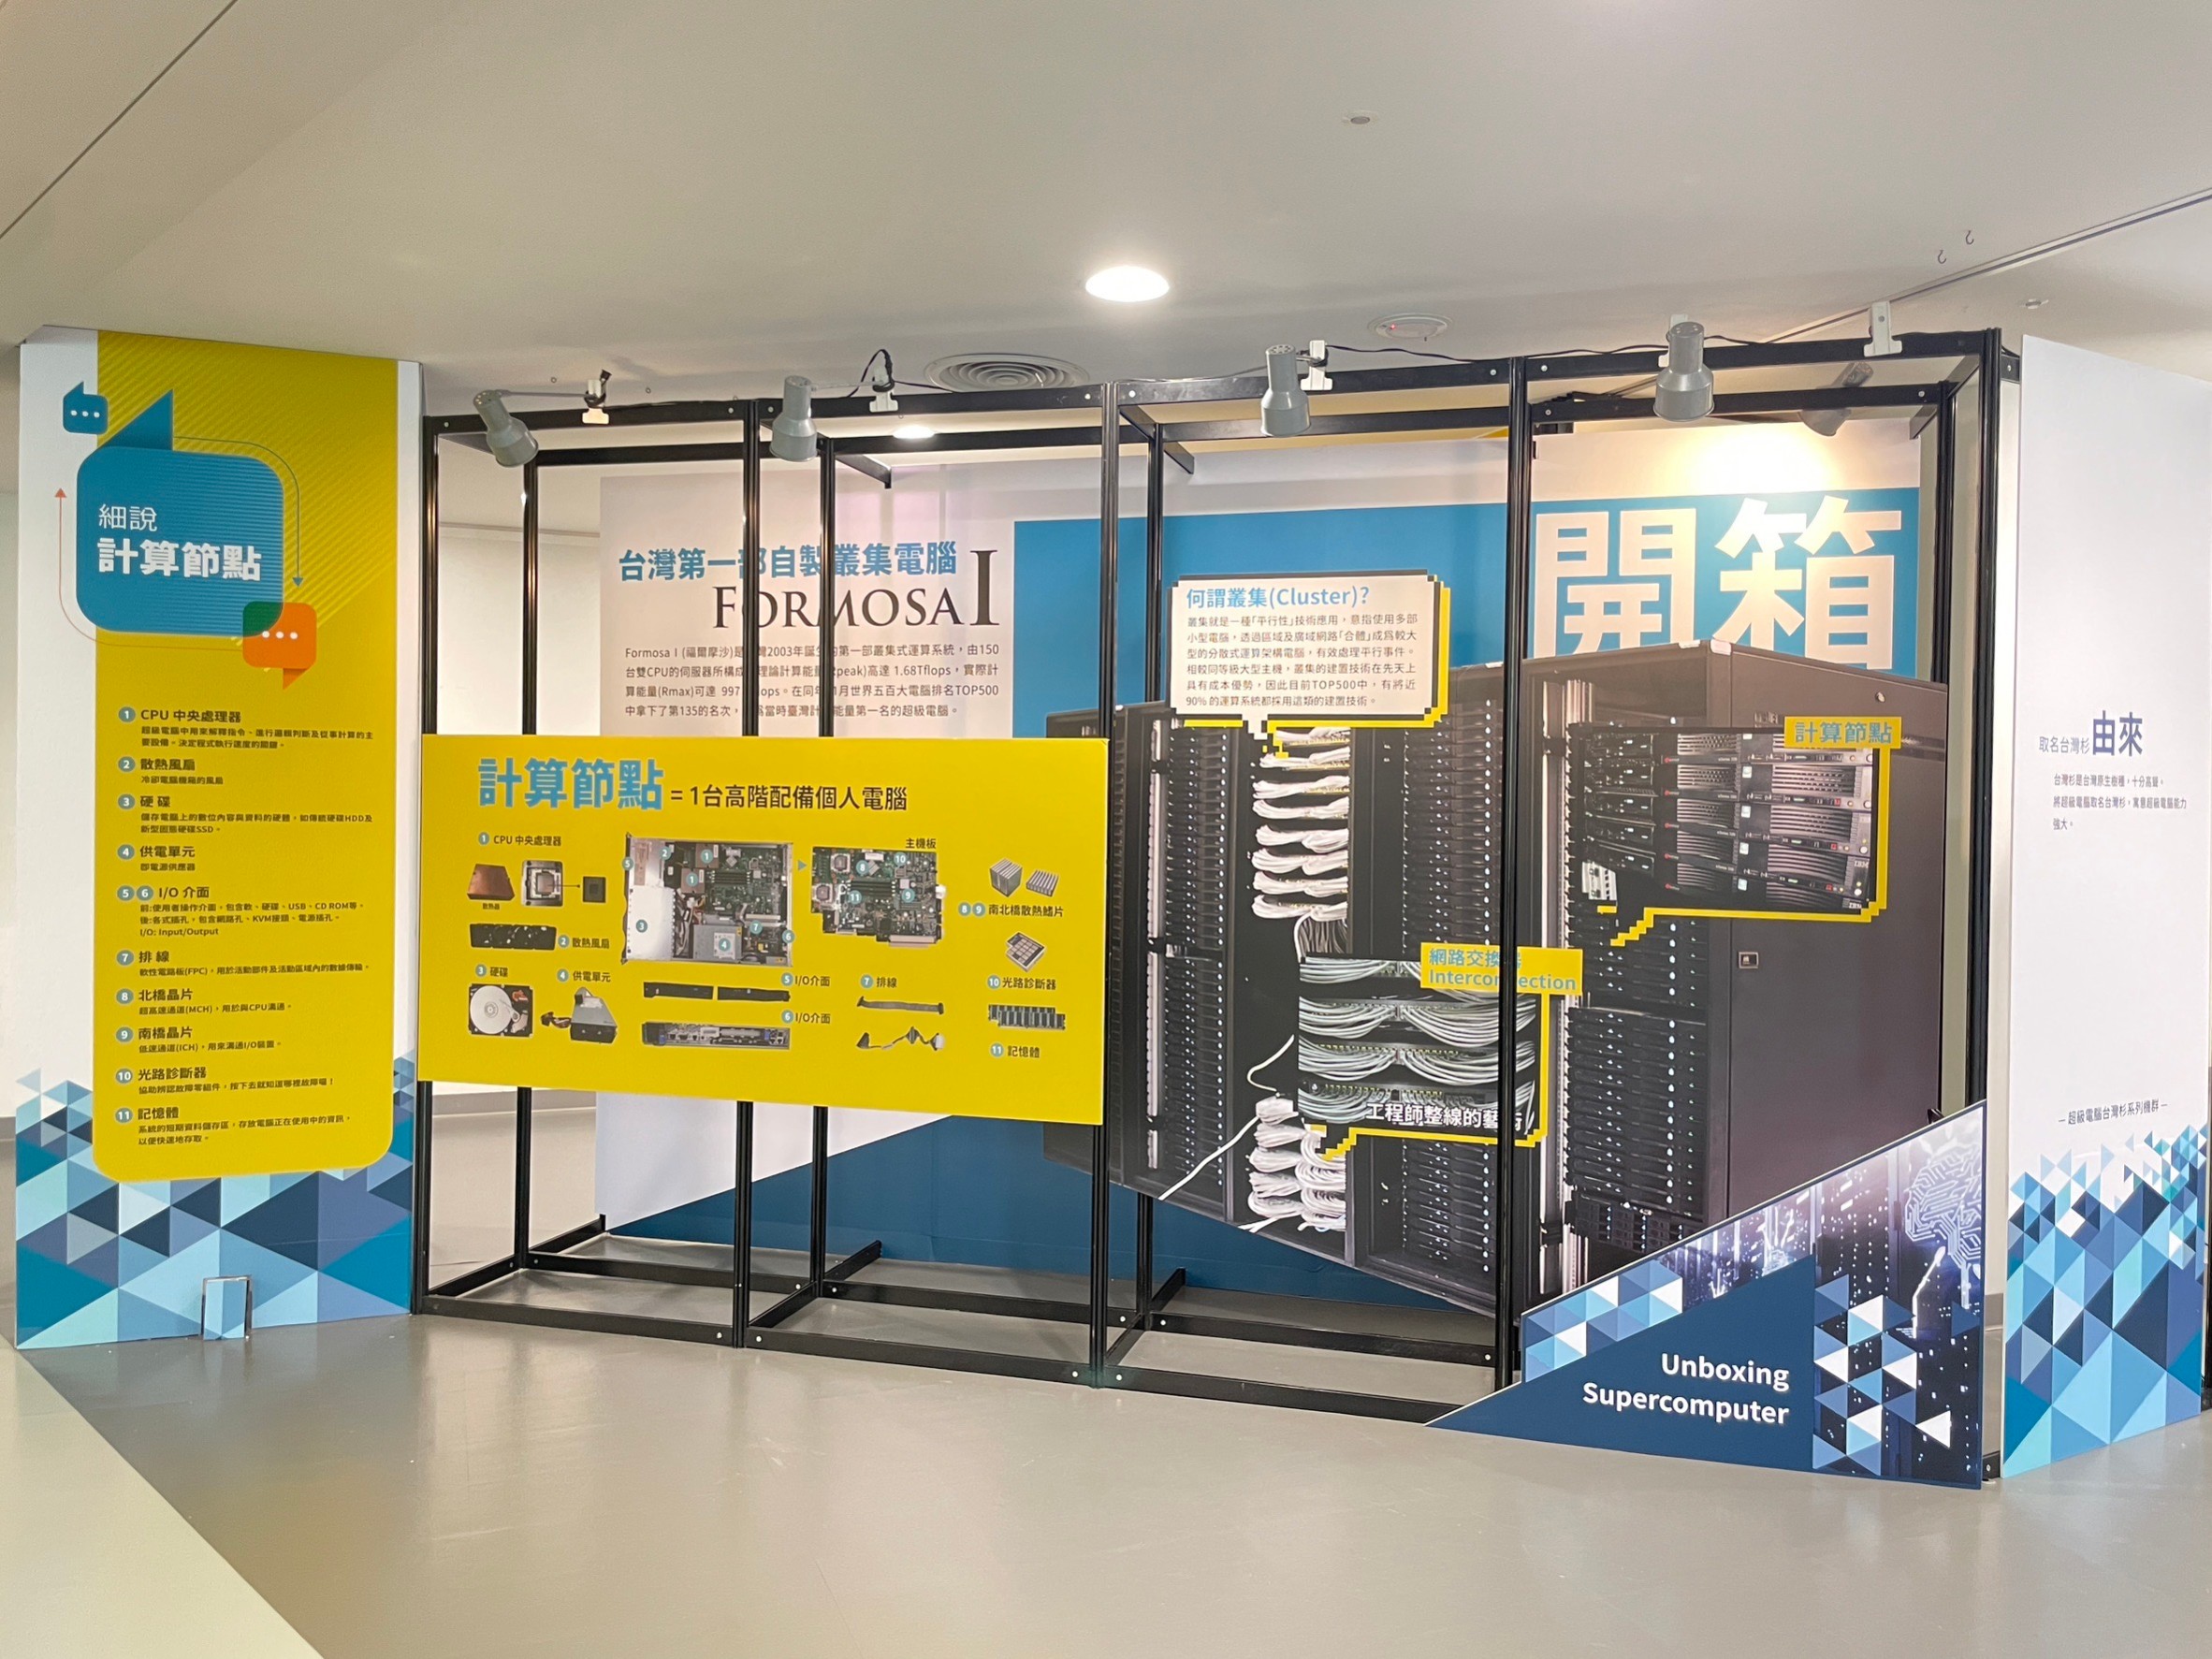 國研院國網中心7月25日起於國立公共資訊圖書館展示